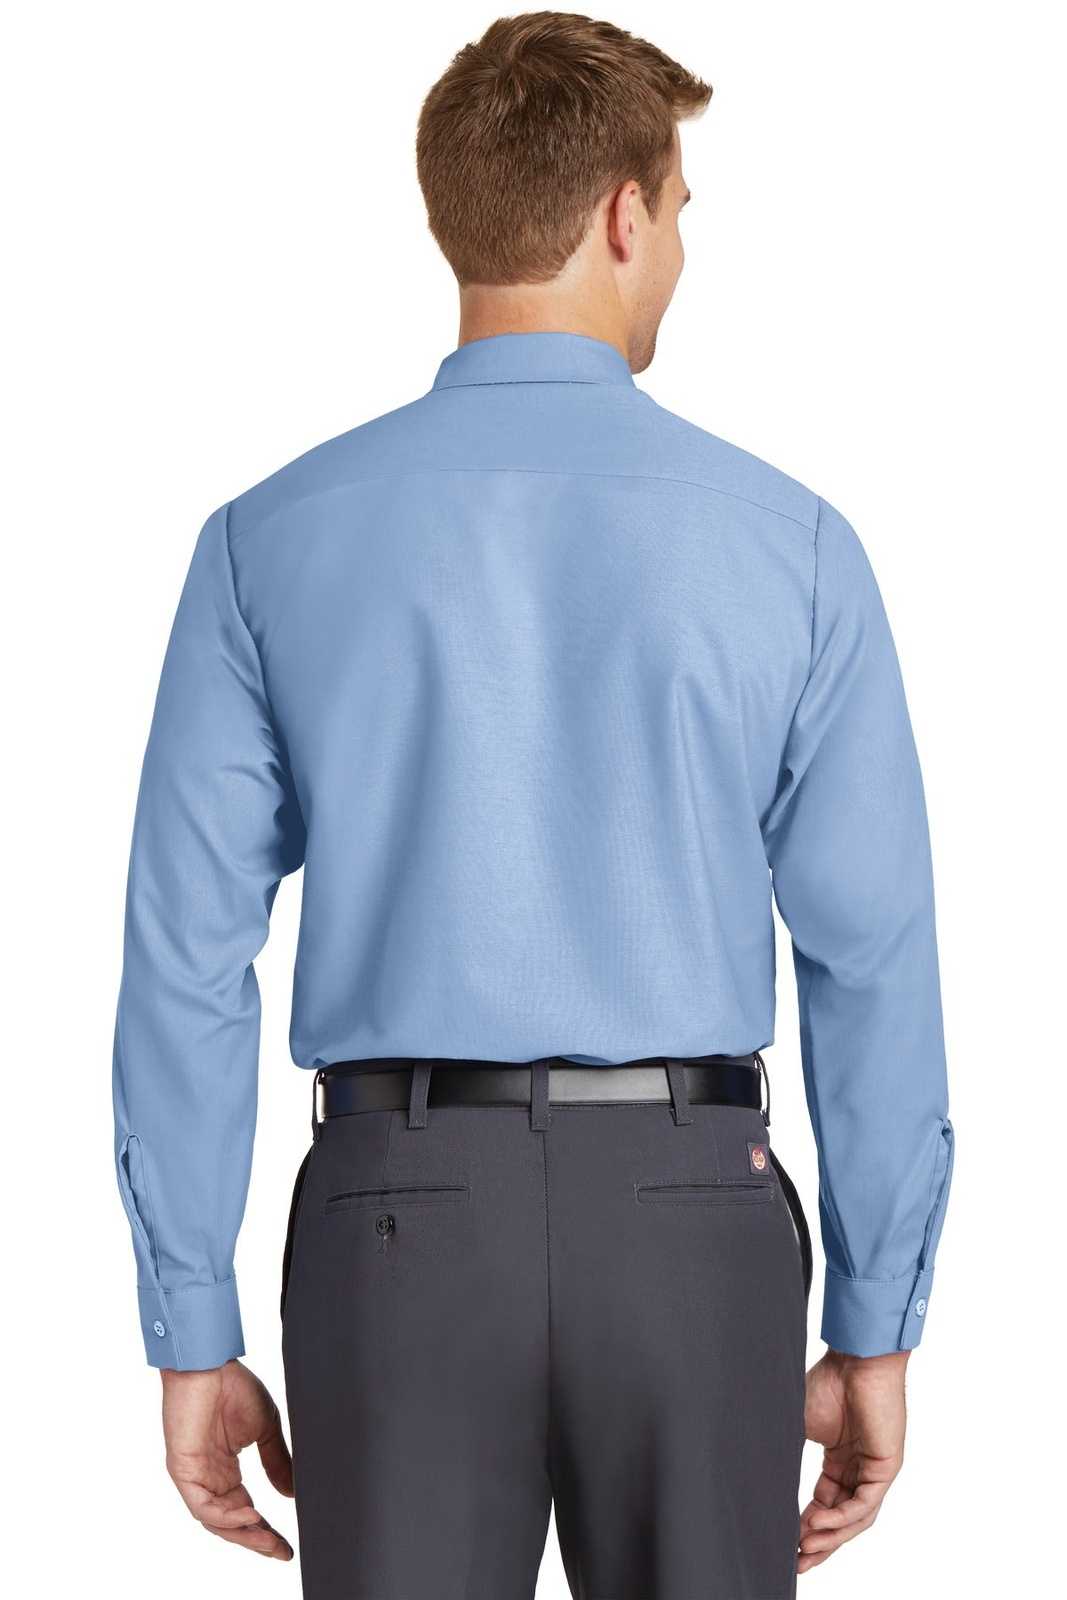 Red Kap SP14 Long Sleeve Industrial Work Shirt - Light Blue - HIT a Double - 2